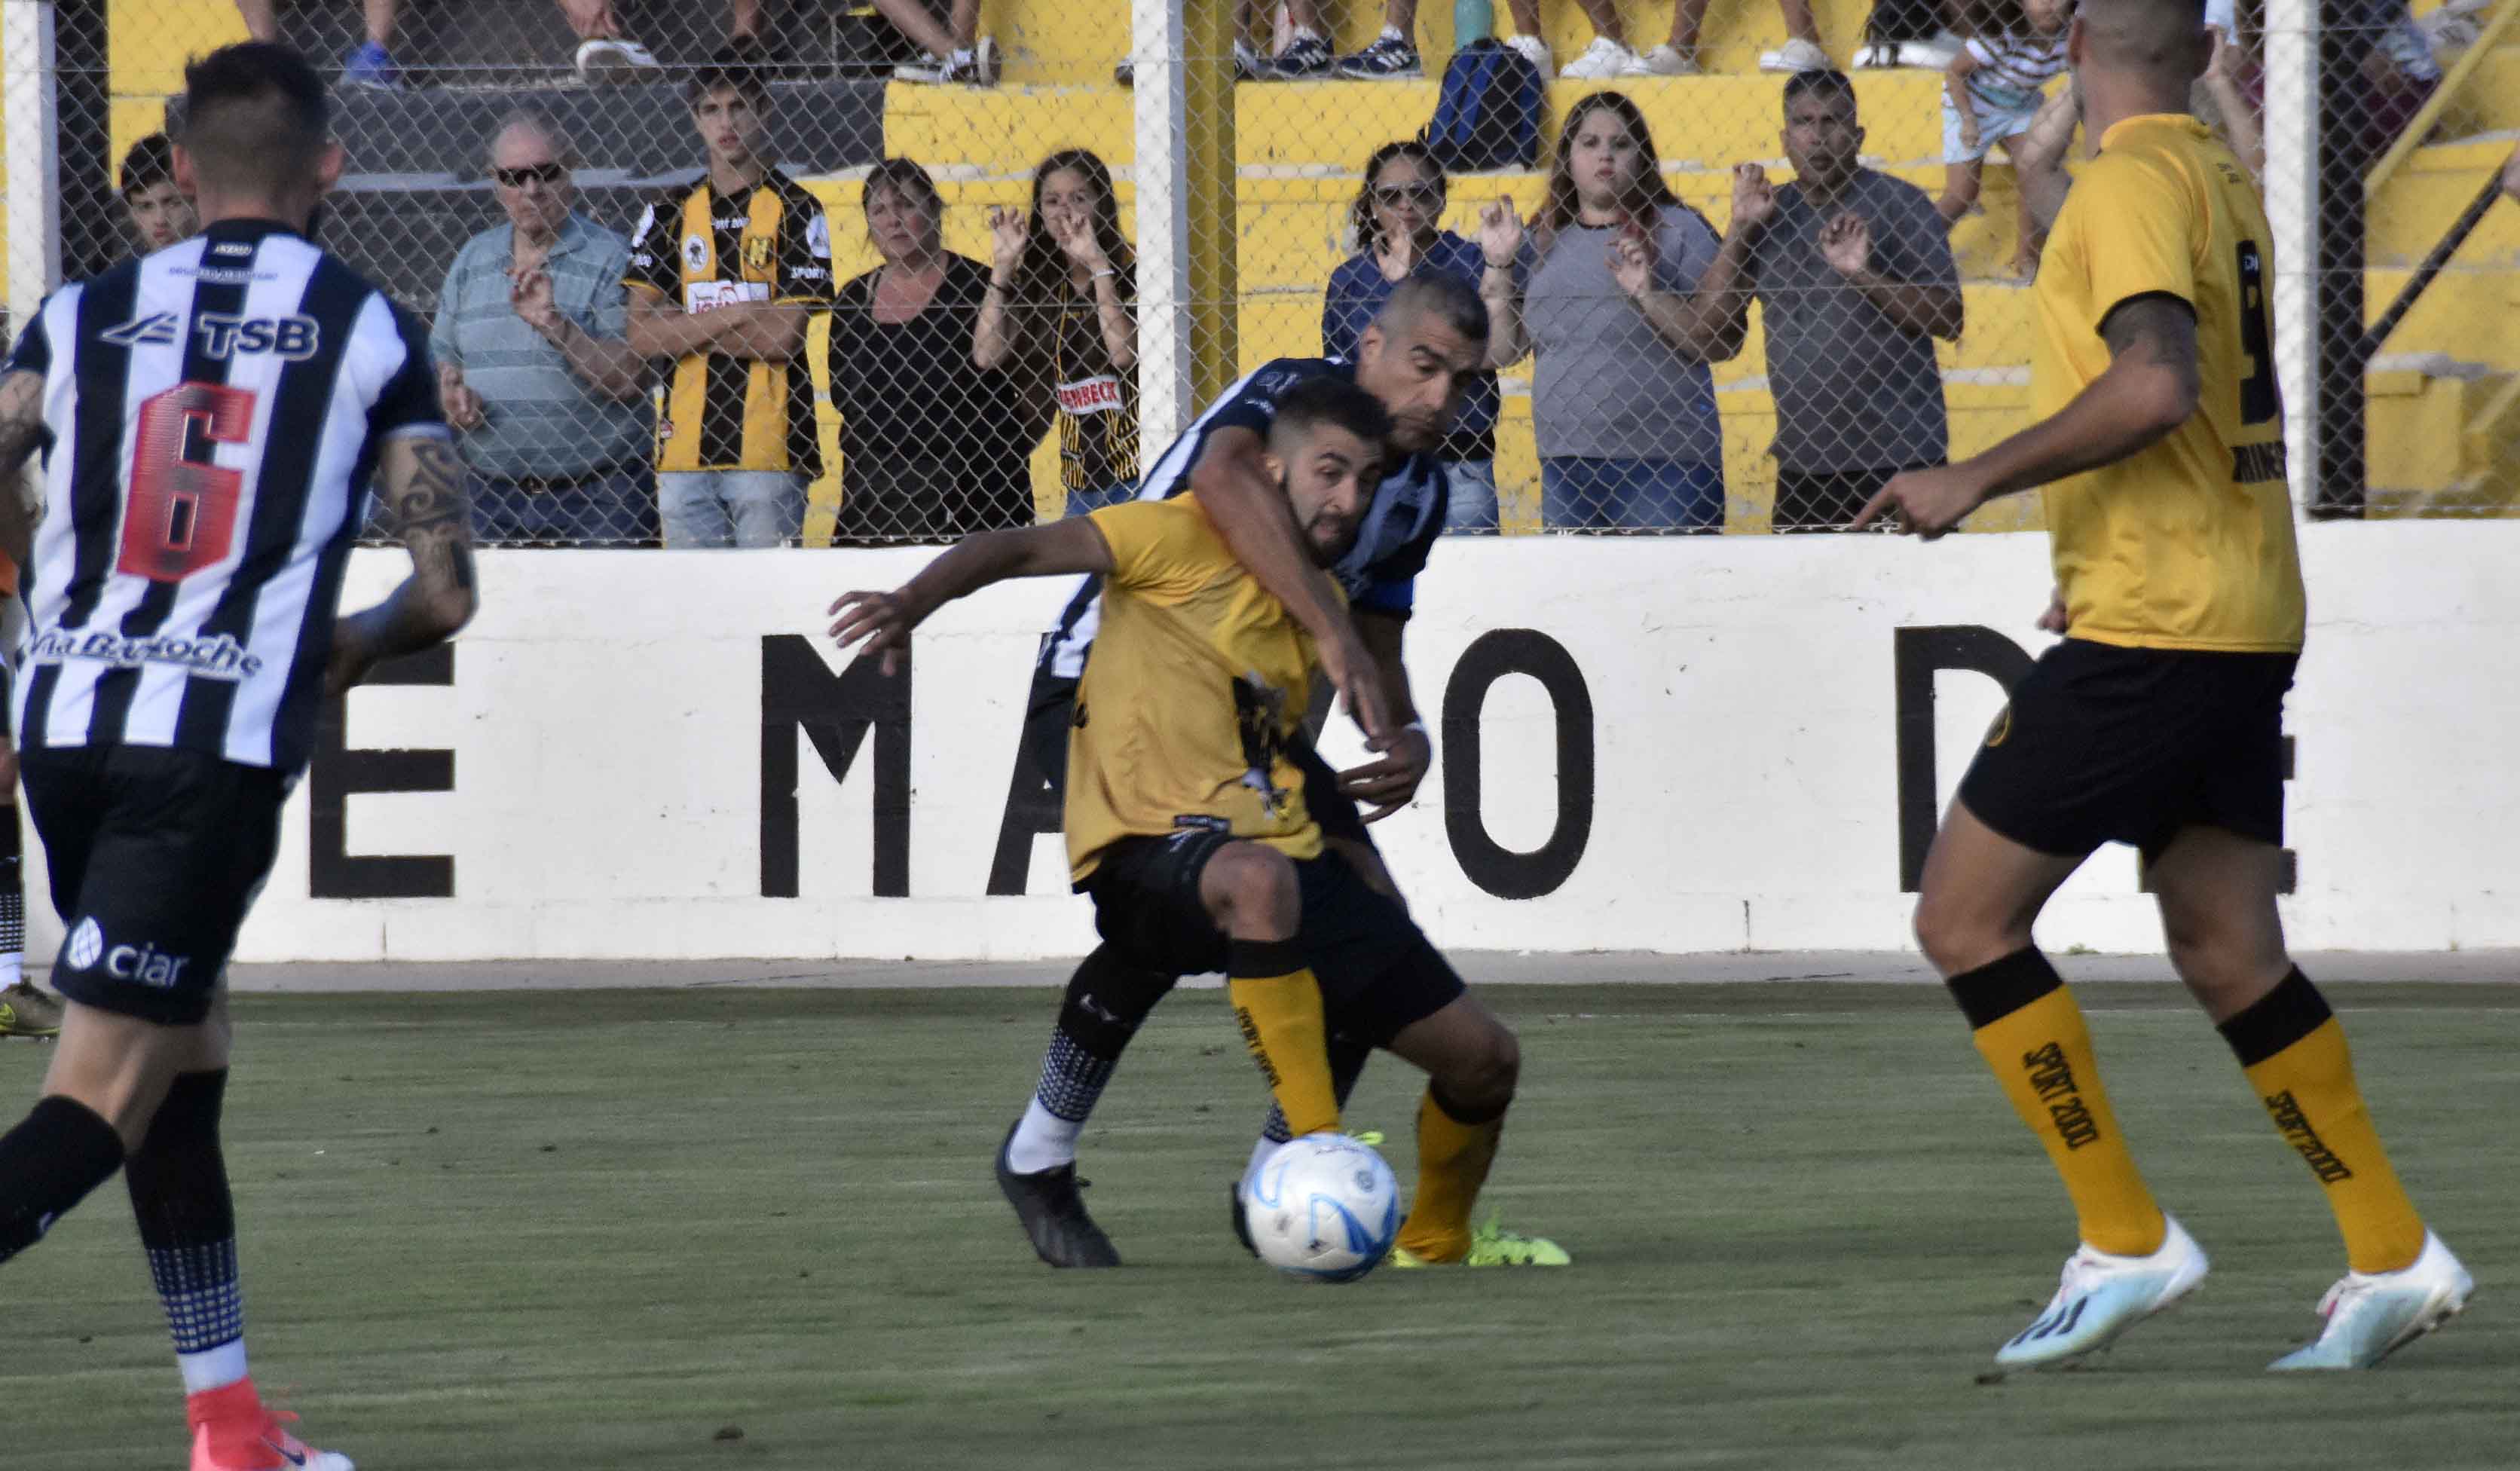 Berra hizo el gol y se perderá la próxima fecha por cinco amarillas. (Foto: Gentileza Diario Jornada)